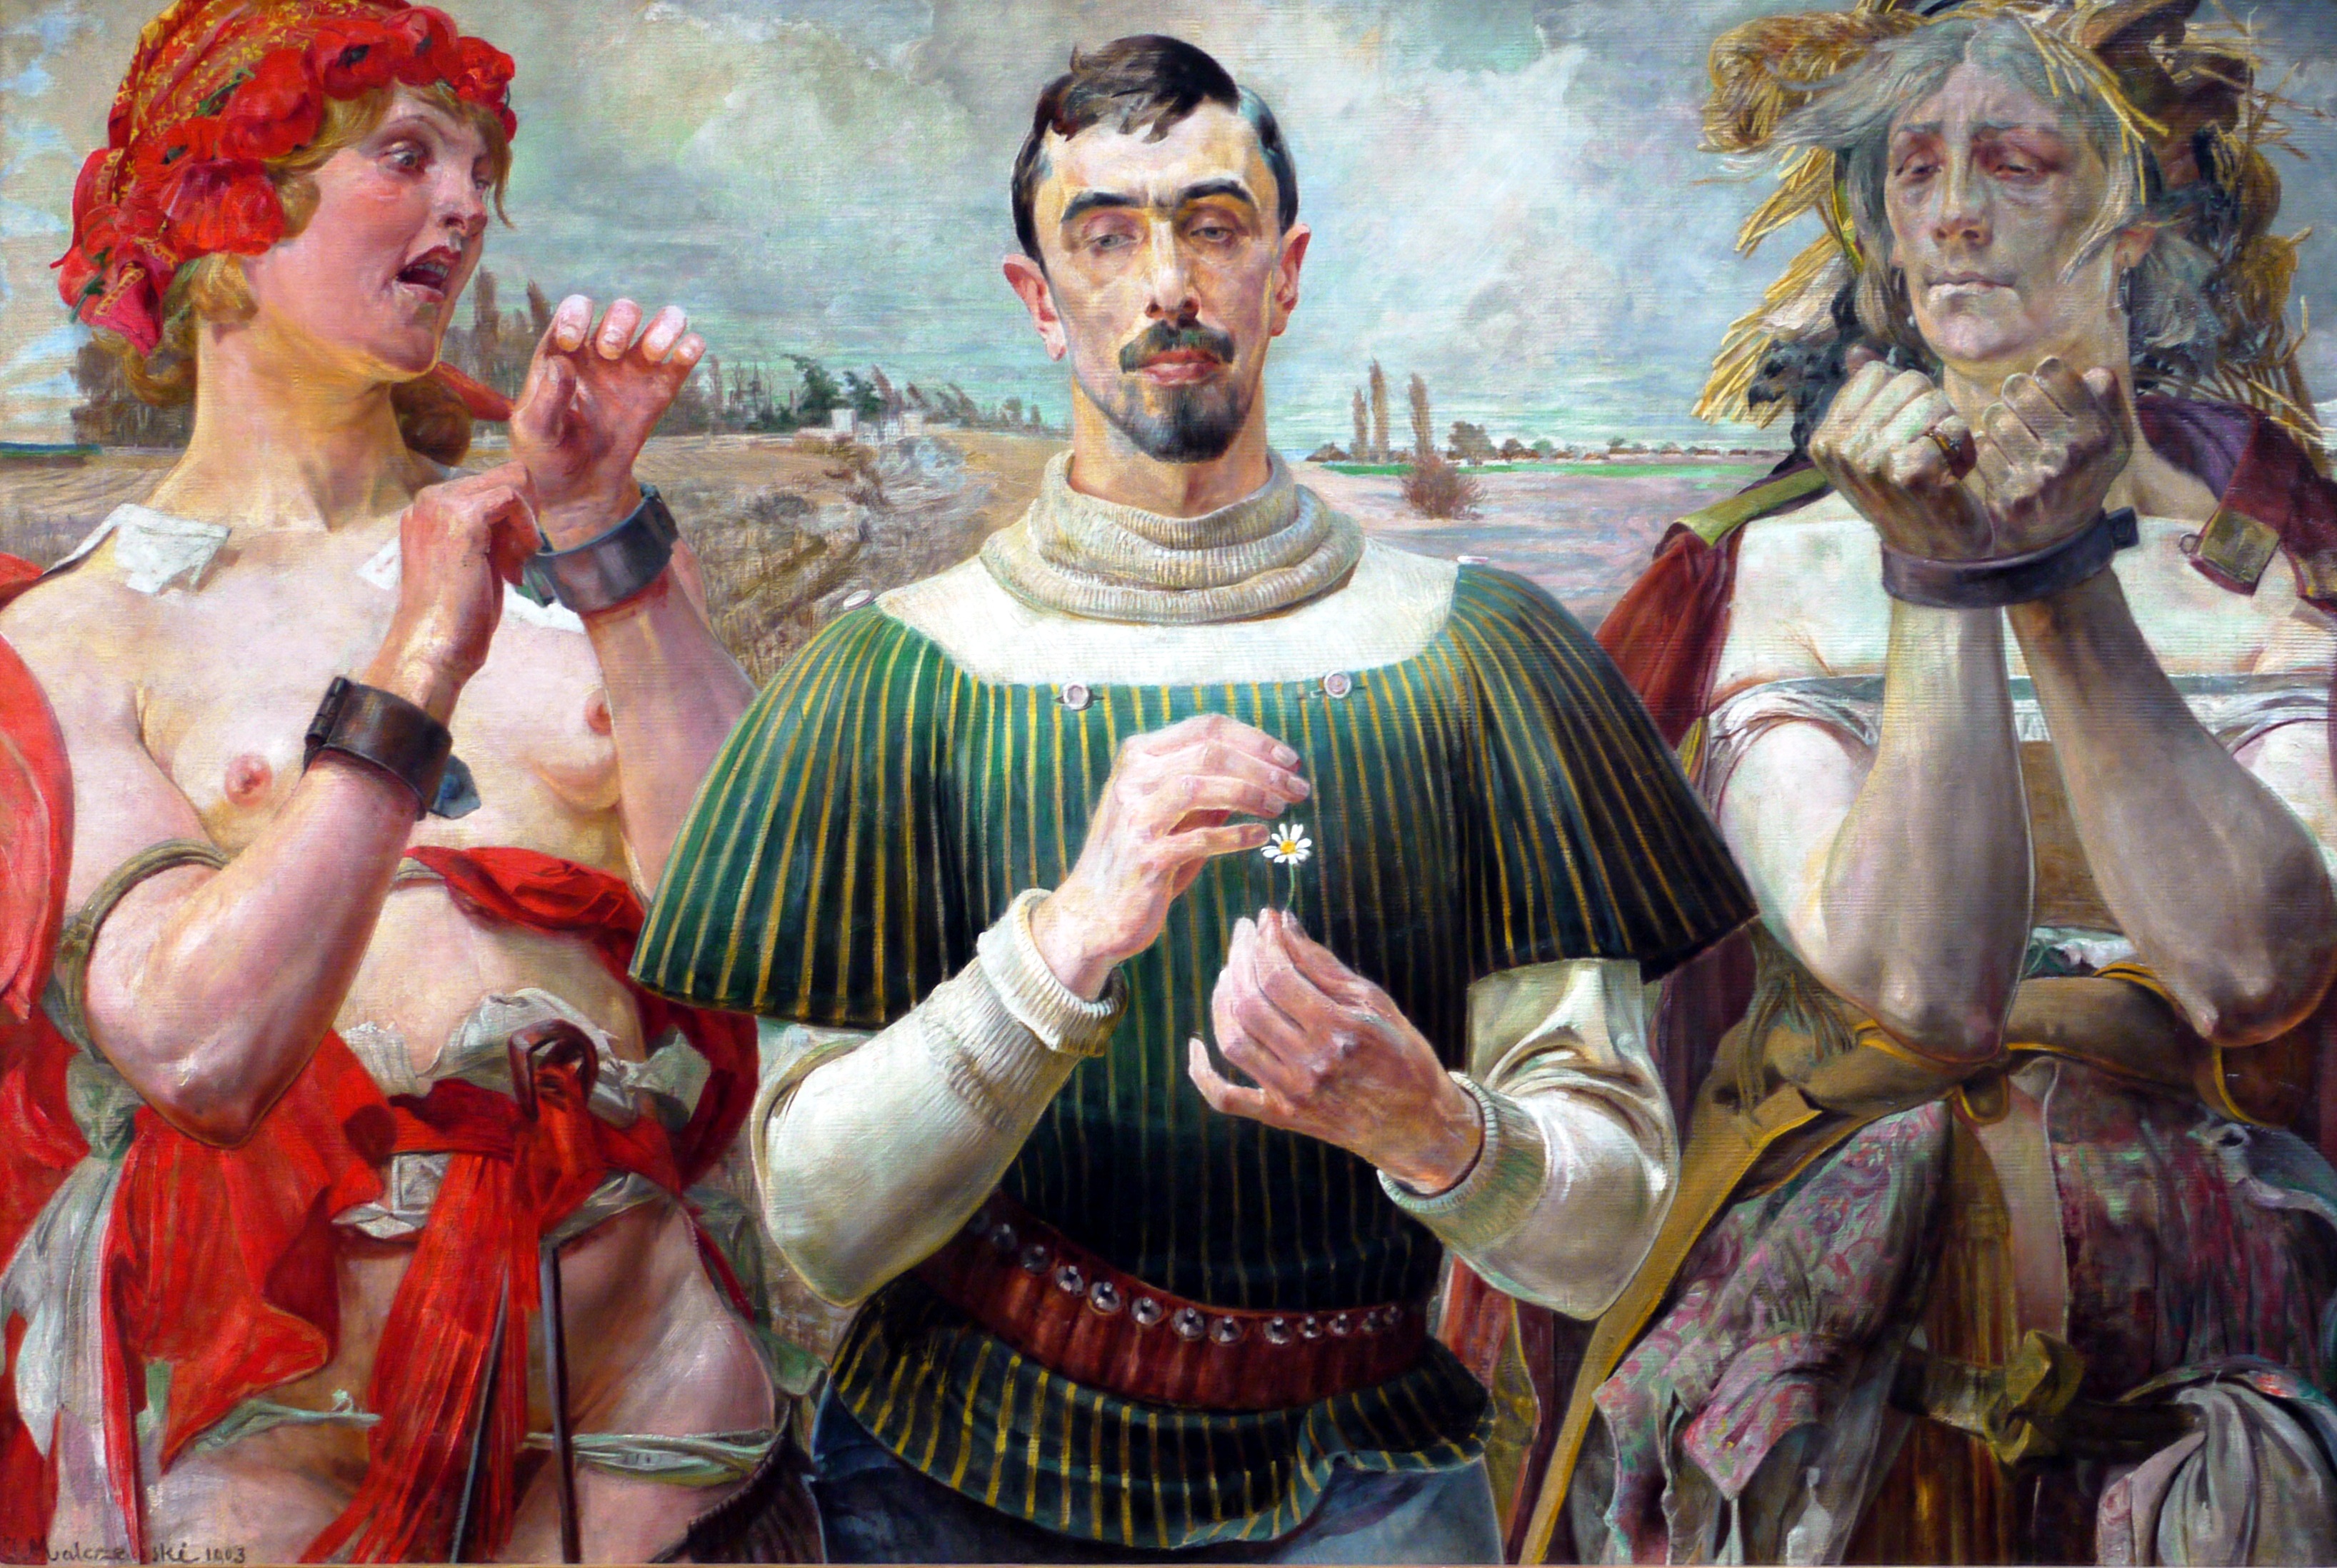 亞歷山大·威洛波爾斯基的肖像 by Jacek Malczewski - 1903 - 100 × 149 cm 